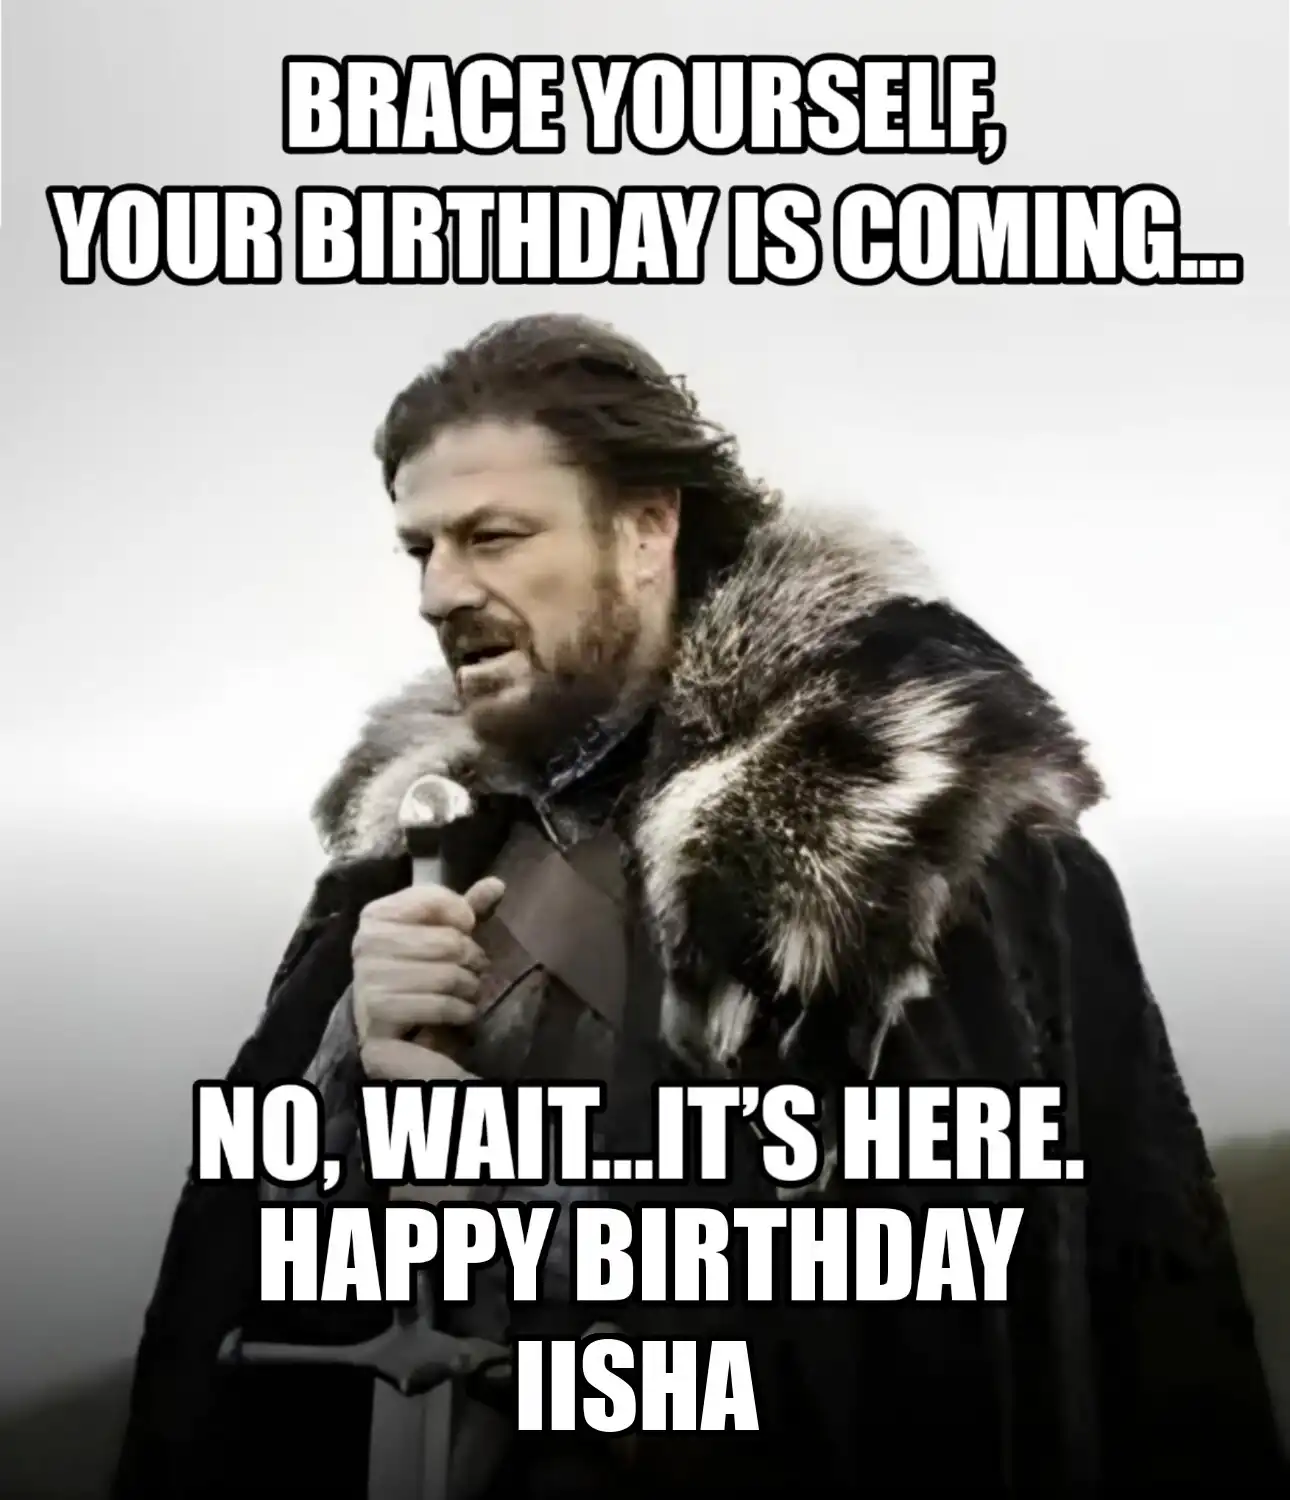 Happy Birthday Iisha Brace Yourself Your Birthday Is Coming Meme